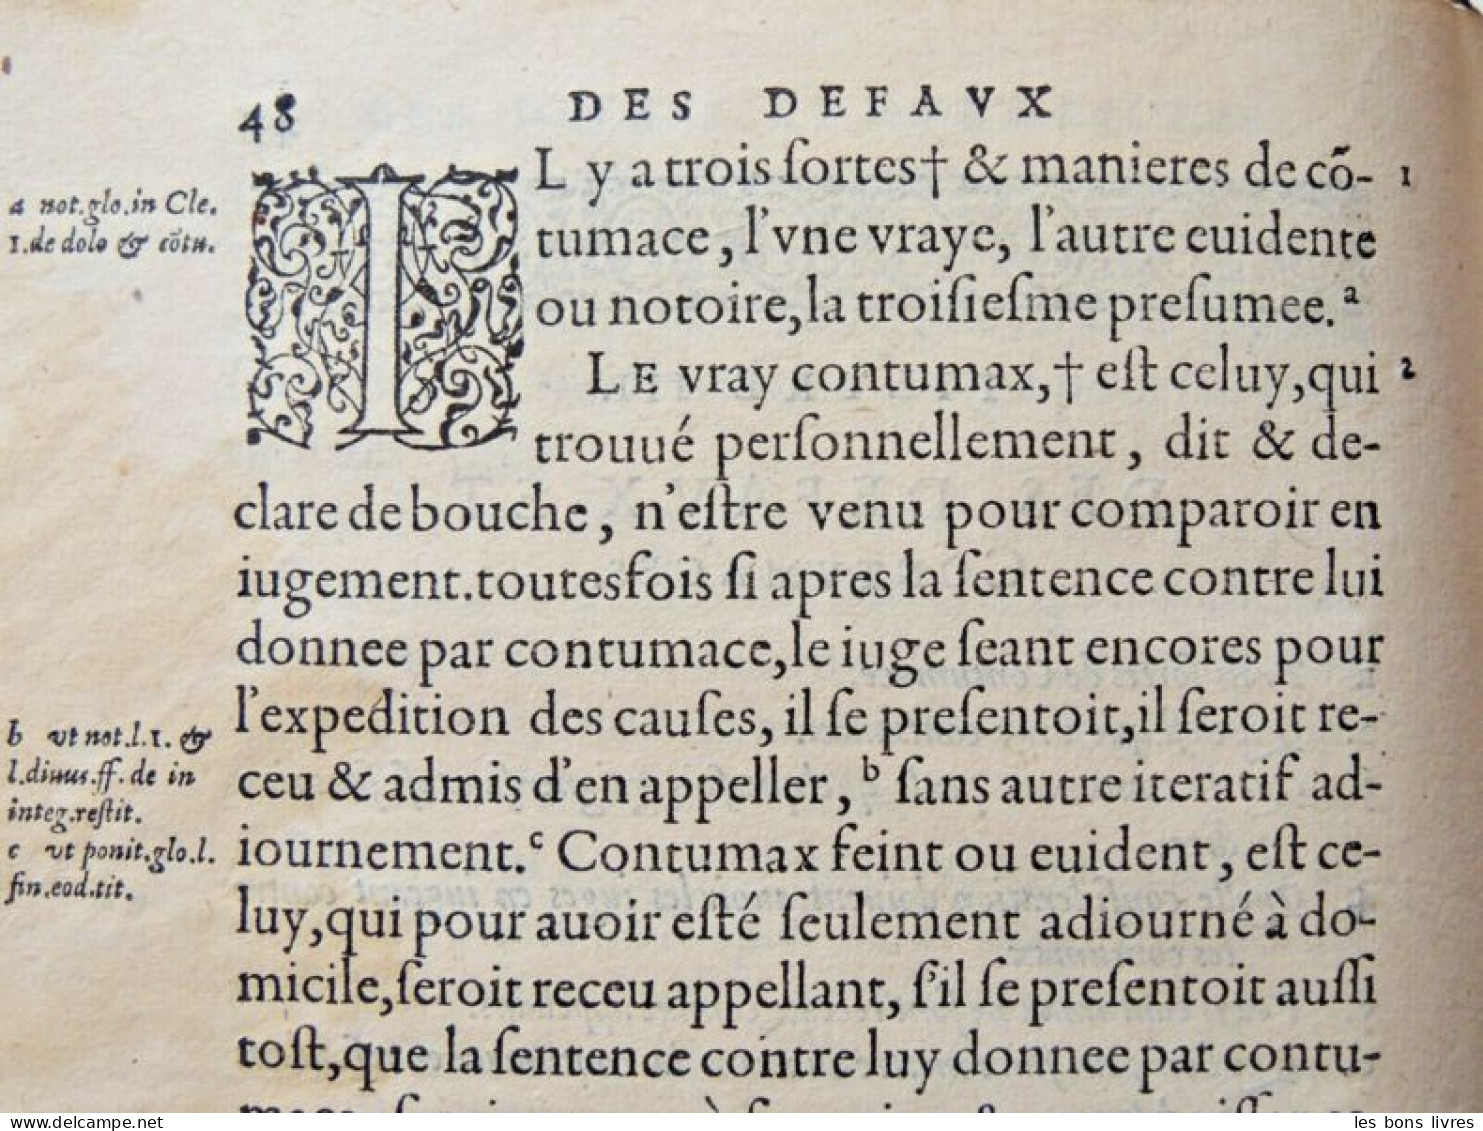 1581. Vélin. Antoine Fontanon. La Pratiqve de Masver ancien, Ivrisconsvlte